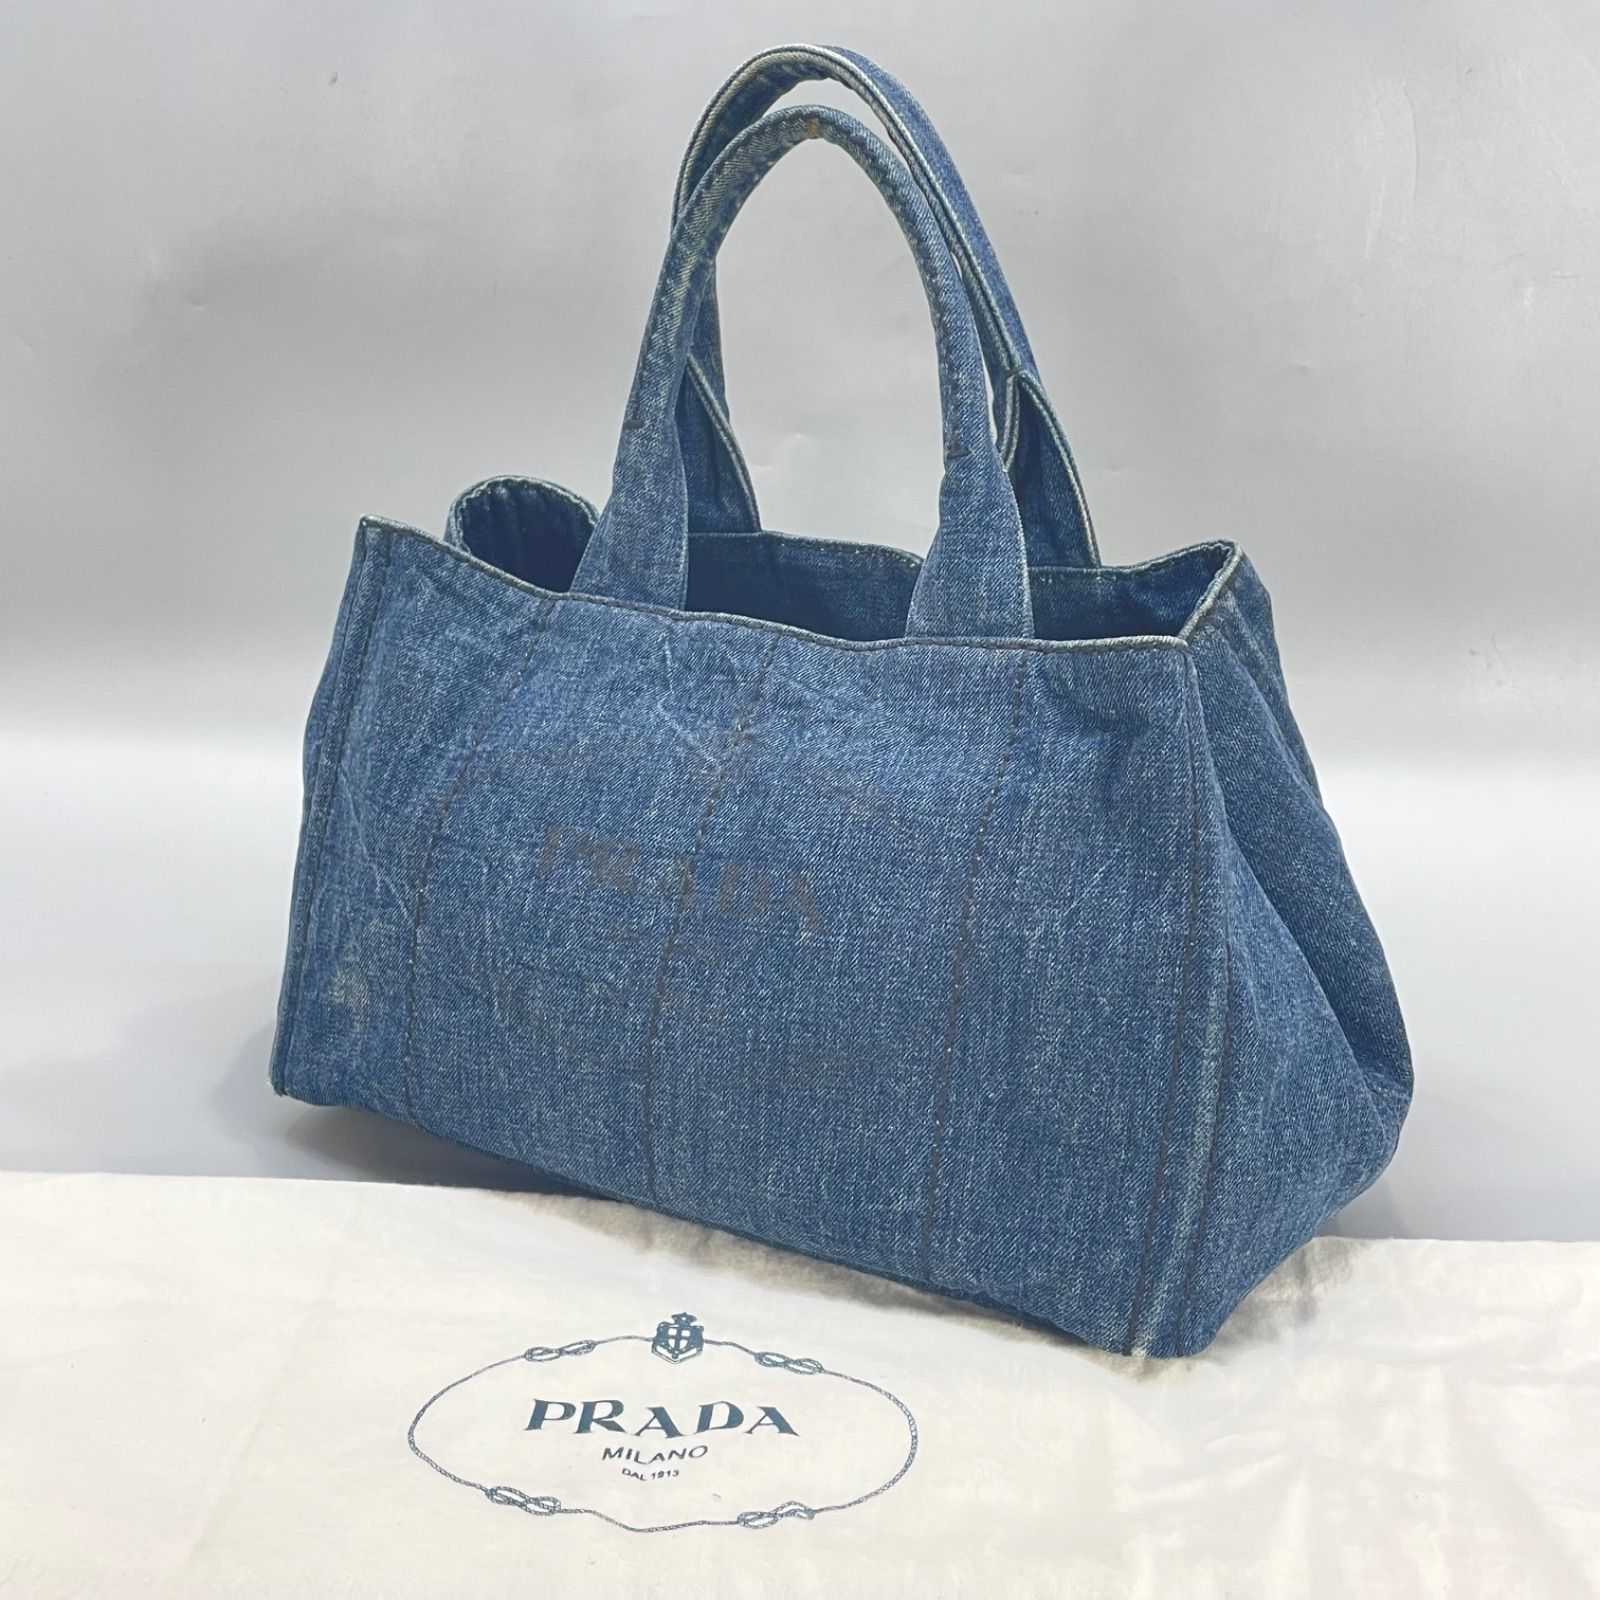 本物保証 美品 PRADA プラダ カナパ デニム トートバッグ 三角プレート Mサイズ 保存袋付 鞄 メ135